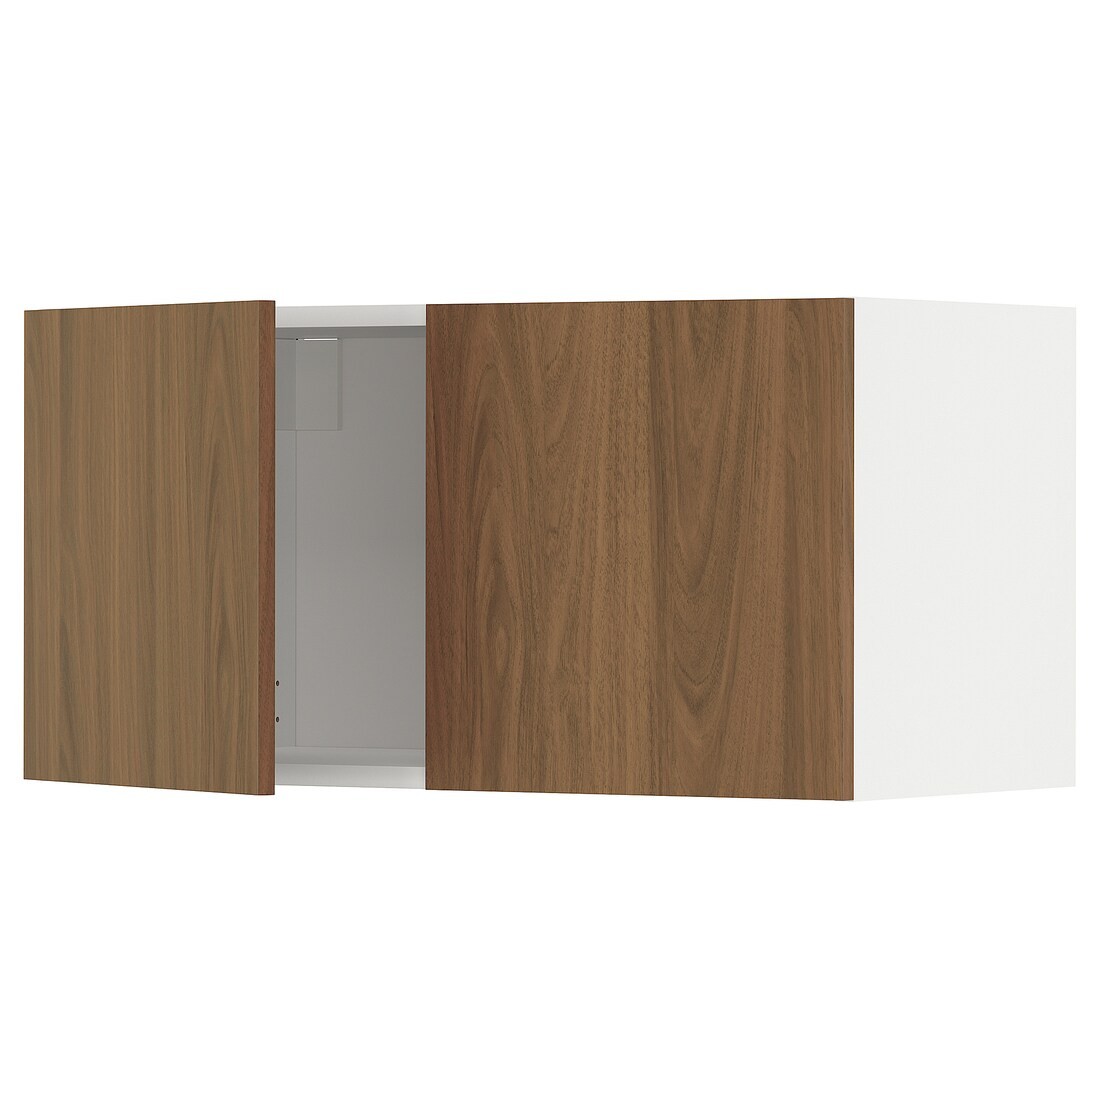 METOD Навесной шкаф с 2 дверями, белый / Имитация коричневого ореха, 80x40 см